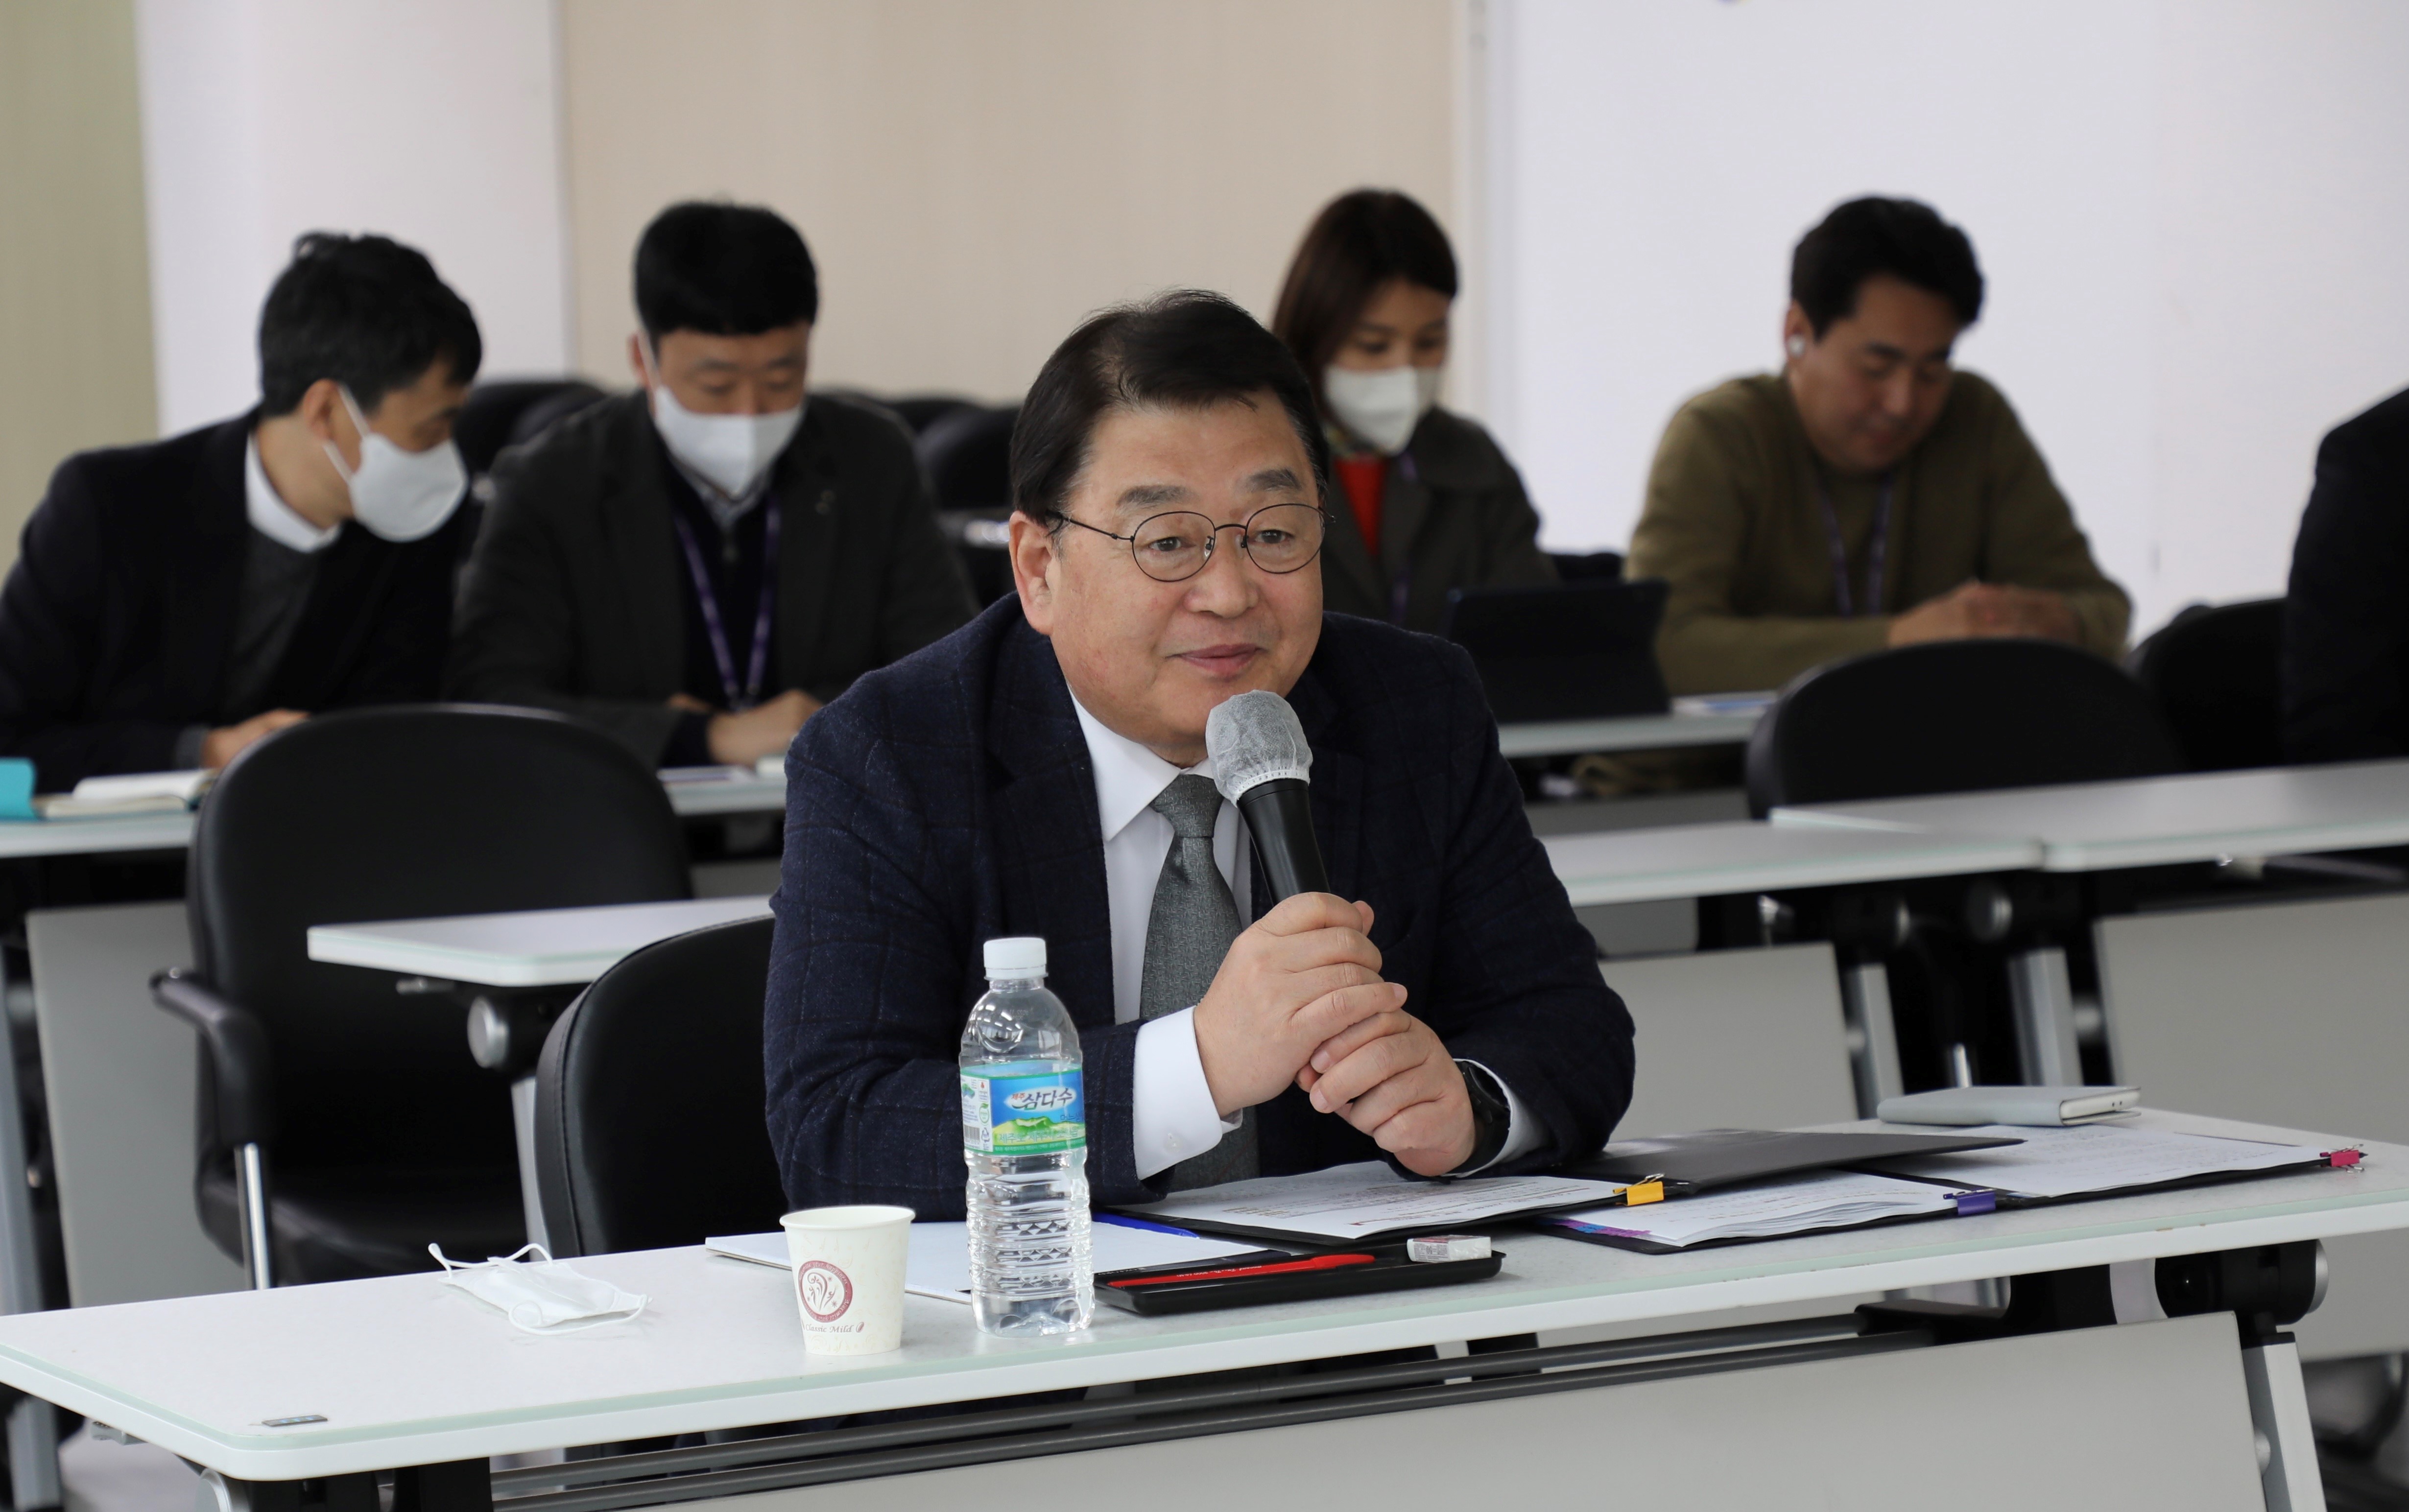 박성효 소상공인시장진흥공단 이사장이 지난 3월 열린 메타버스 소통간담회 ‘소진공100’에서 직원들의 질문에 답하고 있다.